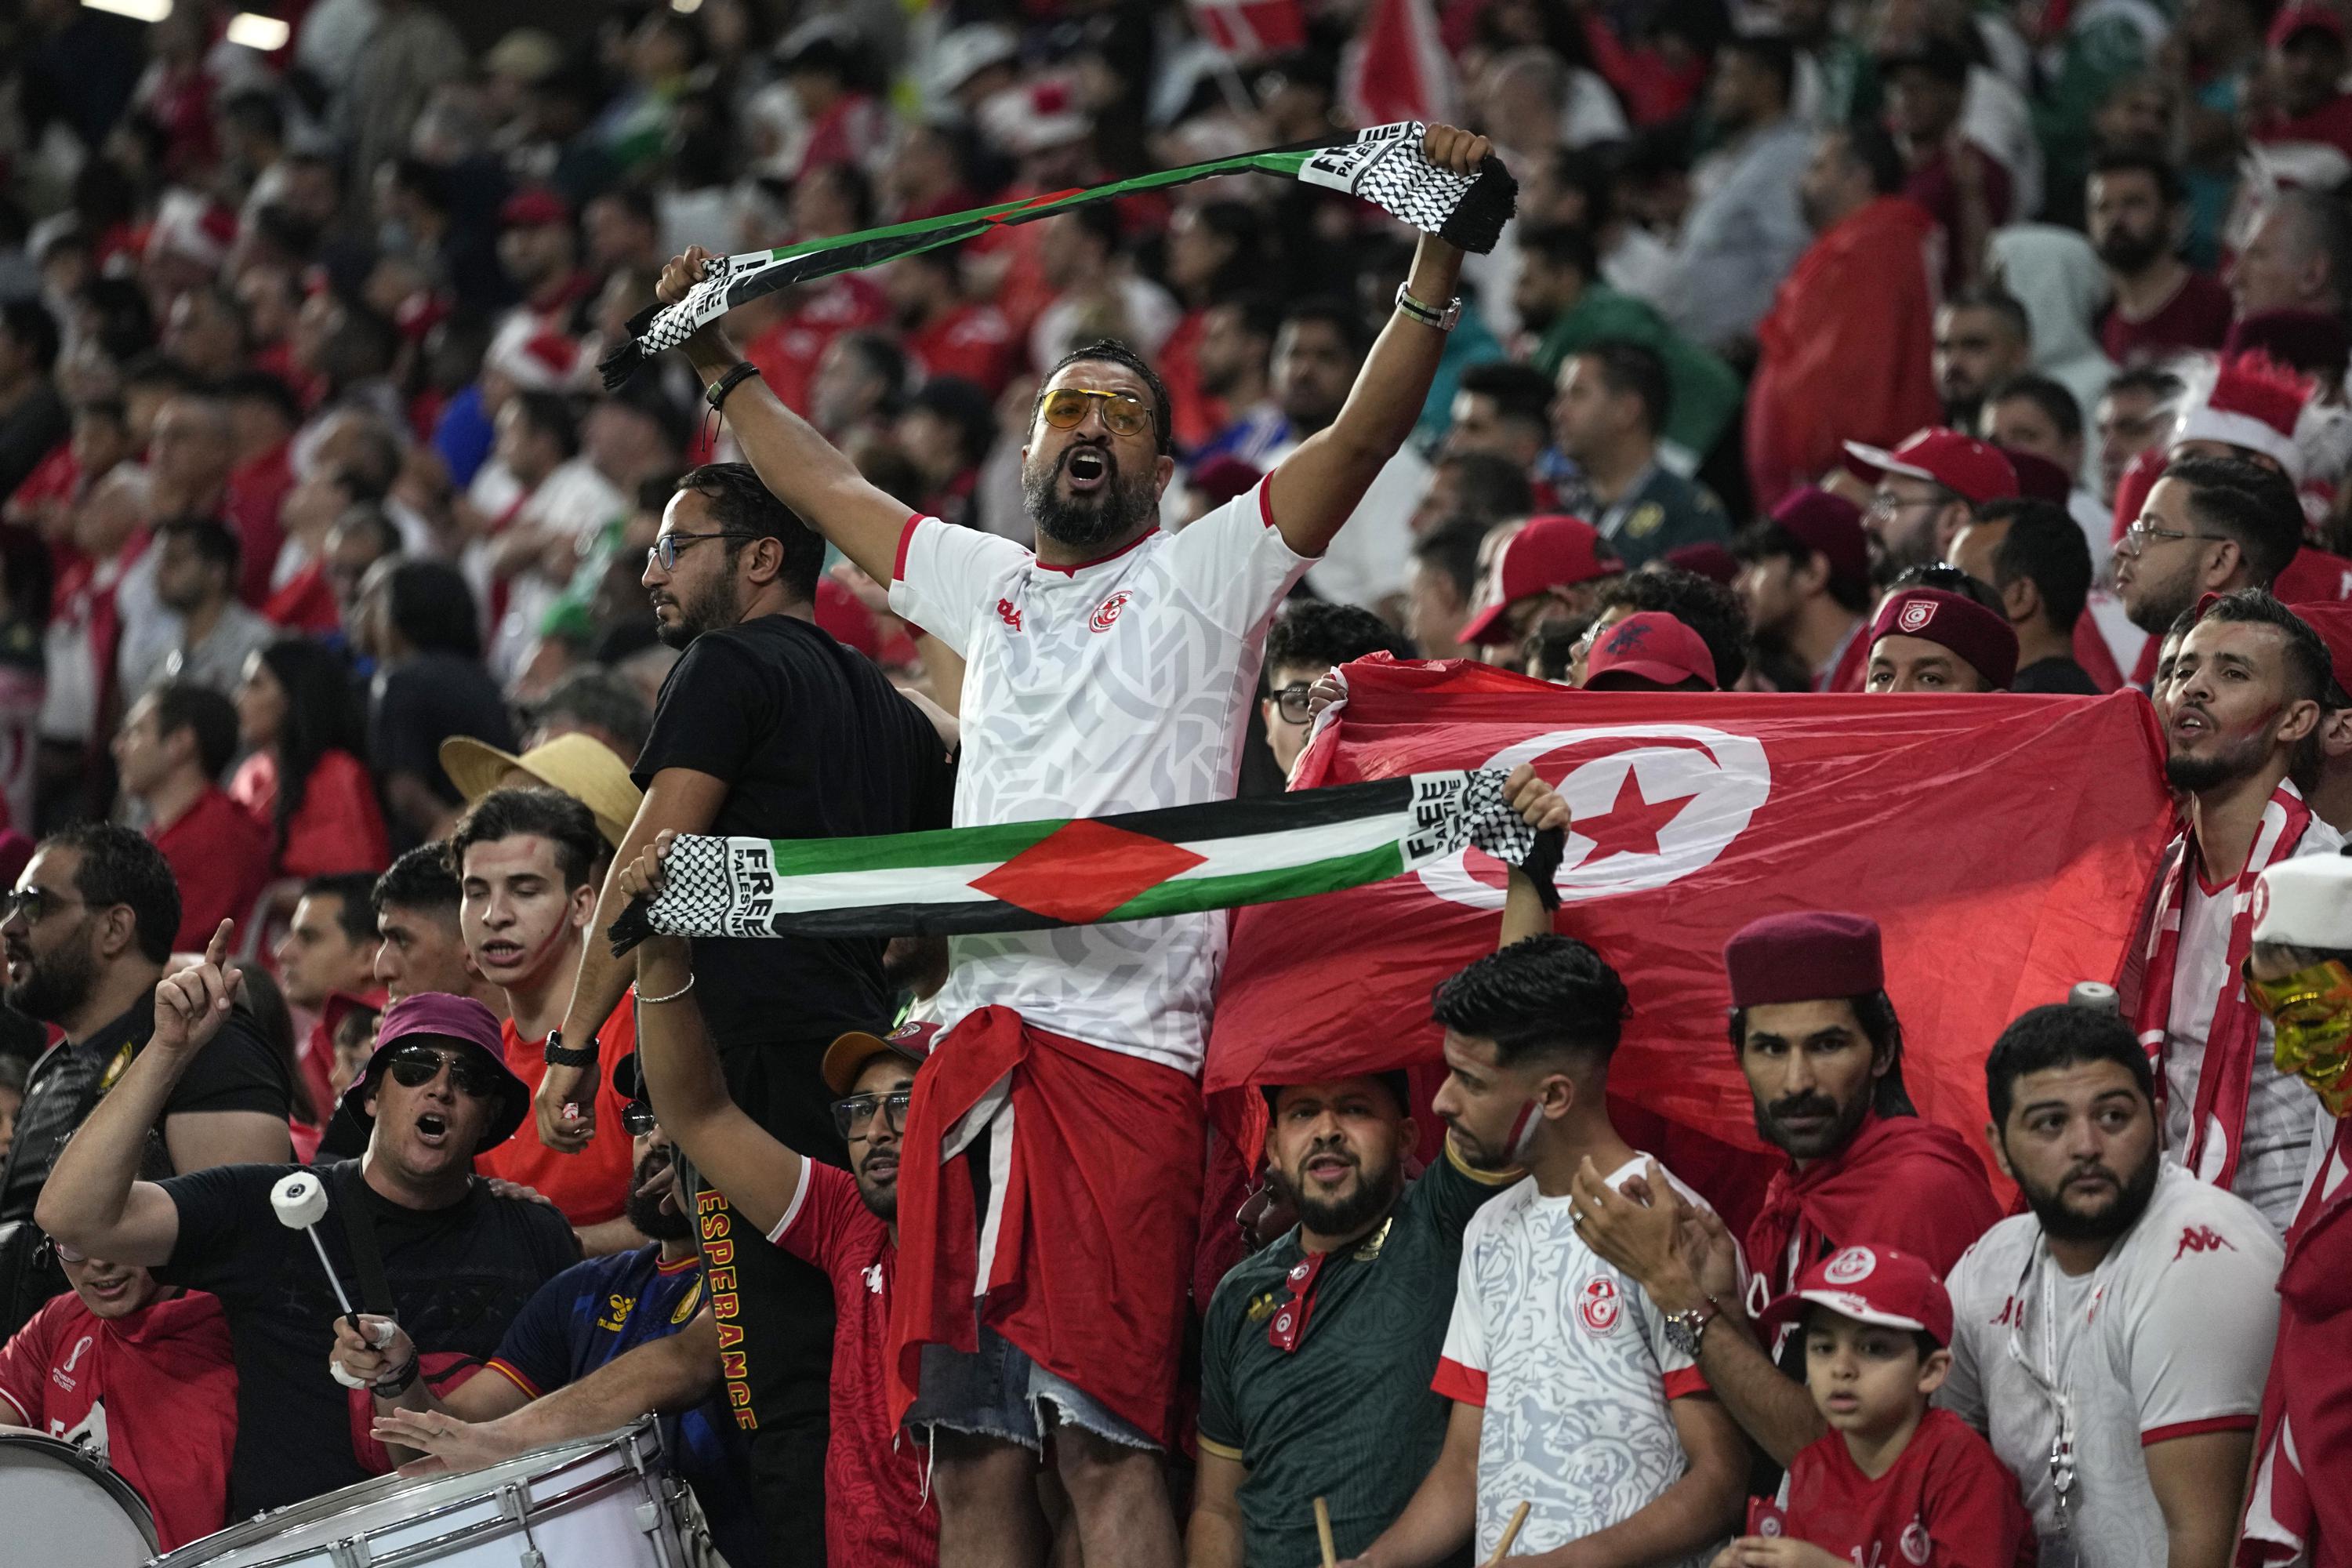 دعم المشجعين العرب أمر حاسم لتونس ضد أستراليا في كأس العالم